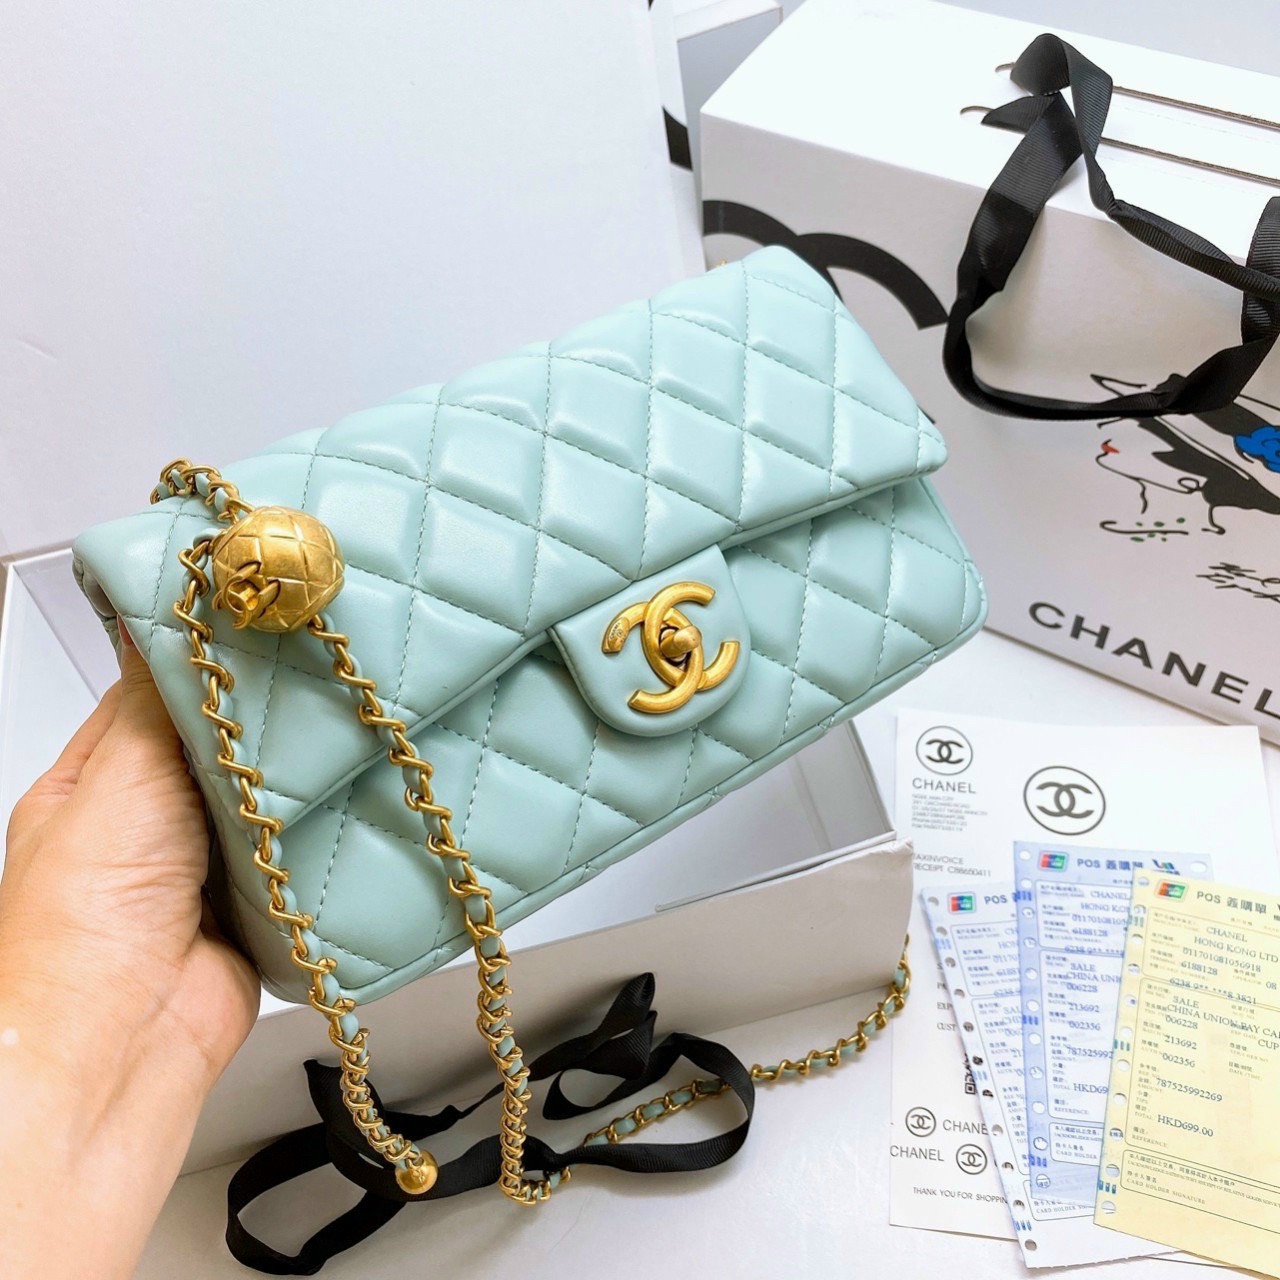 Shop Trang Nemo bán hàng Gucci Chanel có dấu hiệu giả mạo